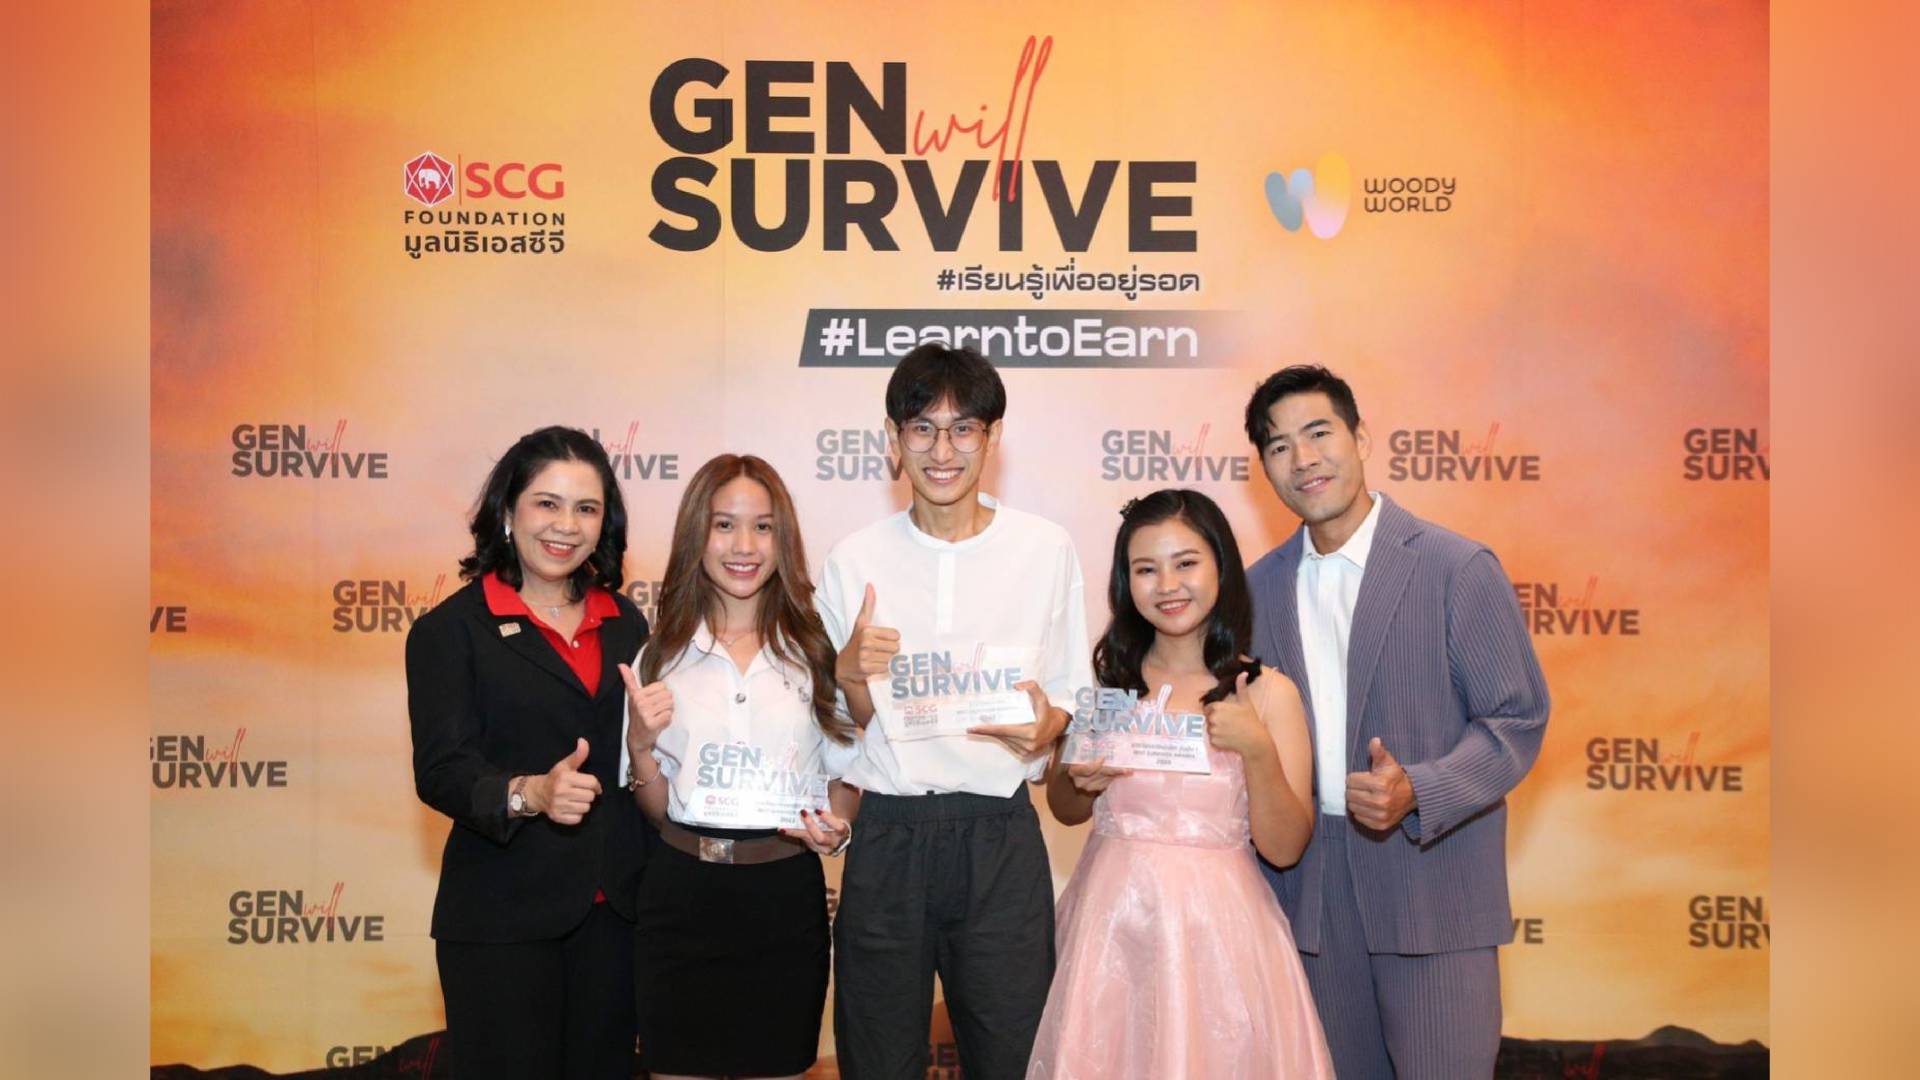 Siriraj Won “Best Survivor Award” from the “SCG’s Gen Will Survive Campaign”